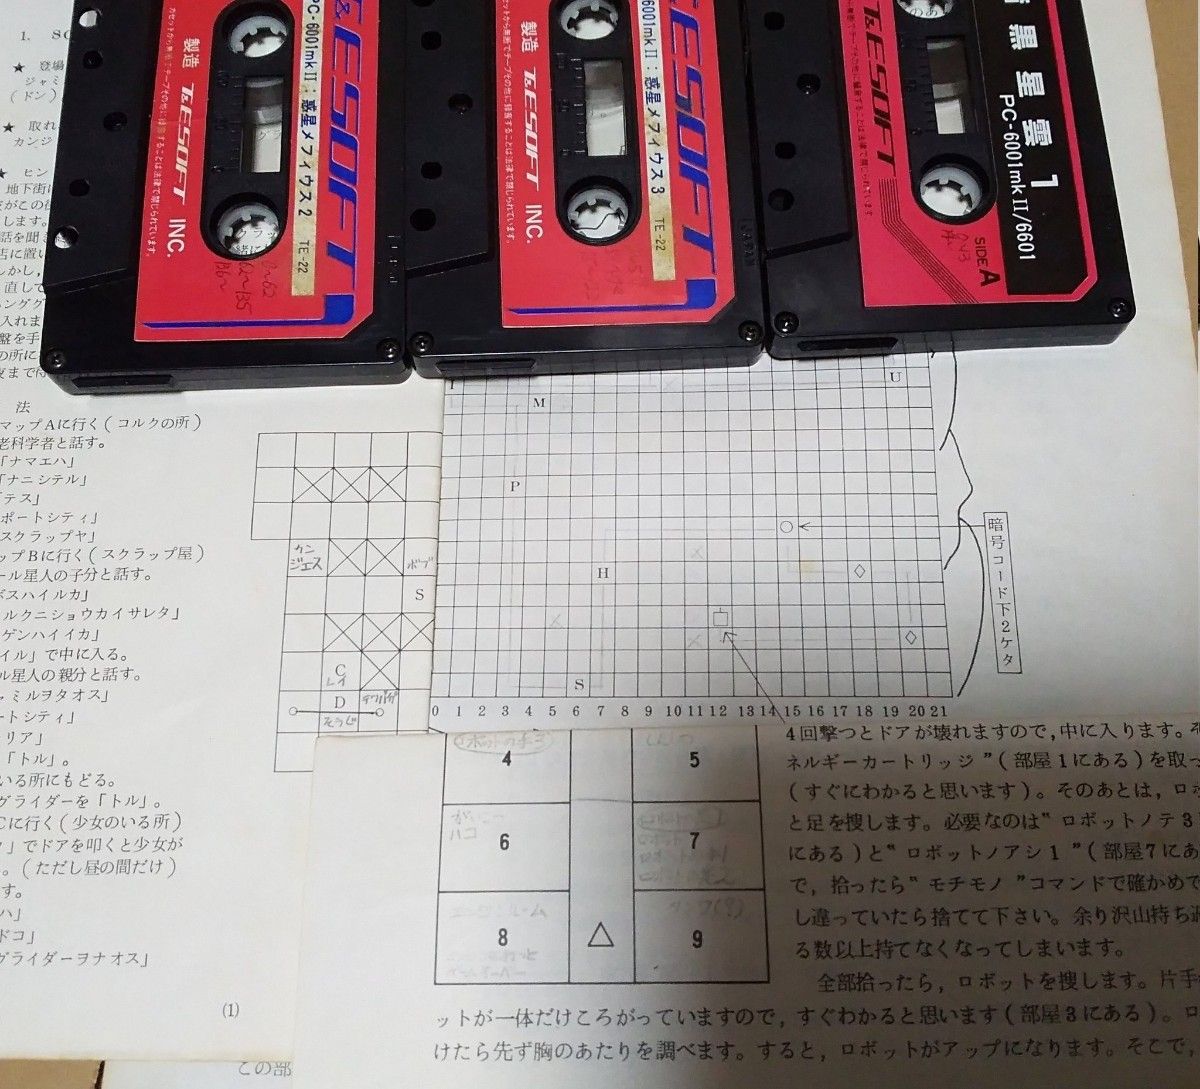 【起動確認済み】PC-6001mkII スターアーサー伝説Ⅰ～Ⅲの３本セット カセットテープ版 ティーアンドイーソフト